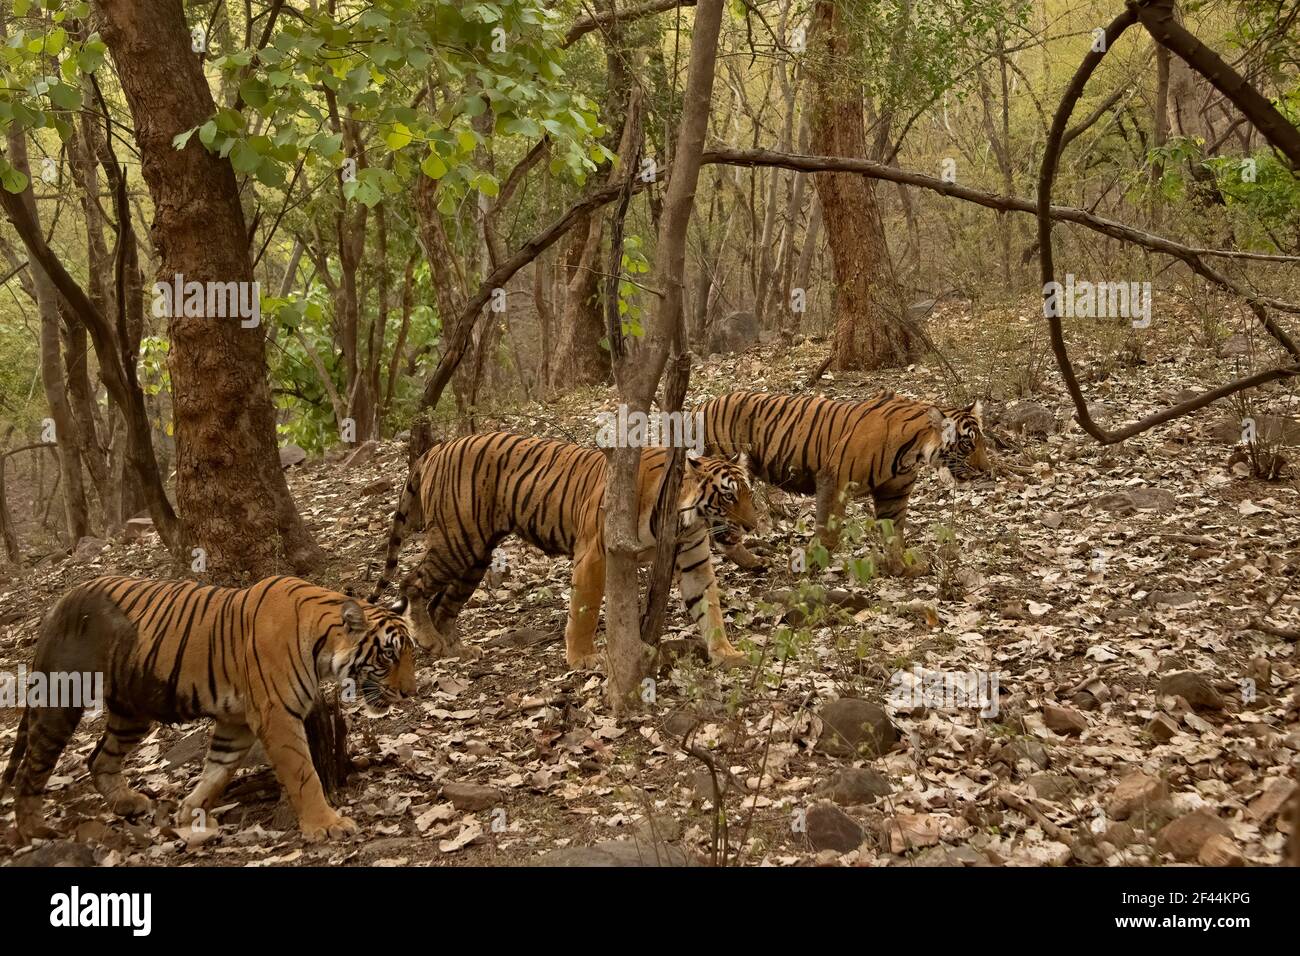 Trois tigres, une mère et deux petits à croissance presque complète marchant dans les forêts vertes de Ranthambhore pendant la saison des moussons en Inde Banque D'Images